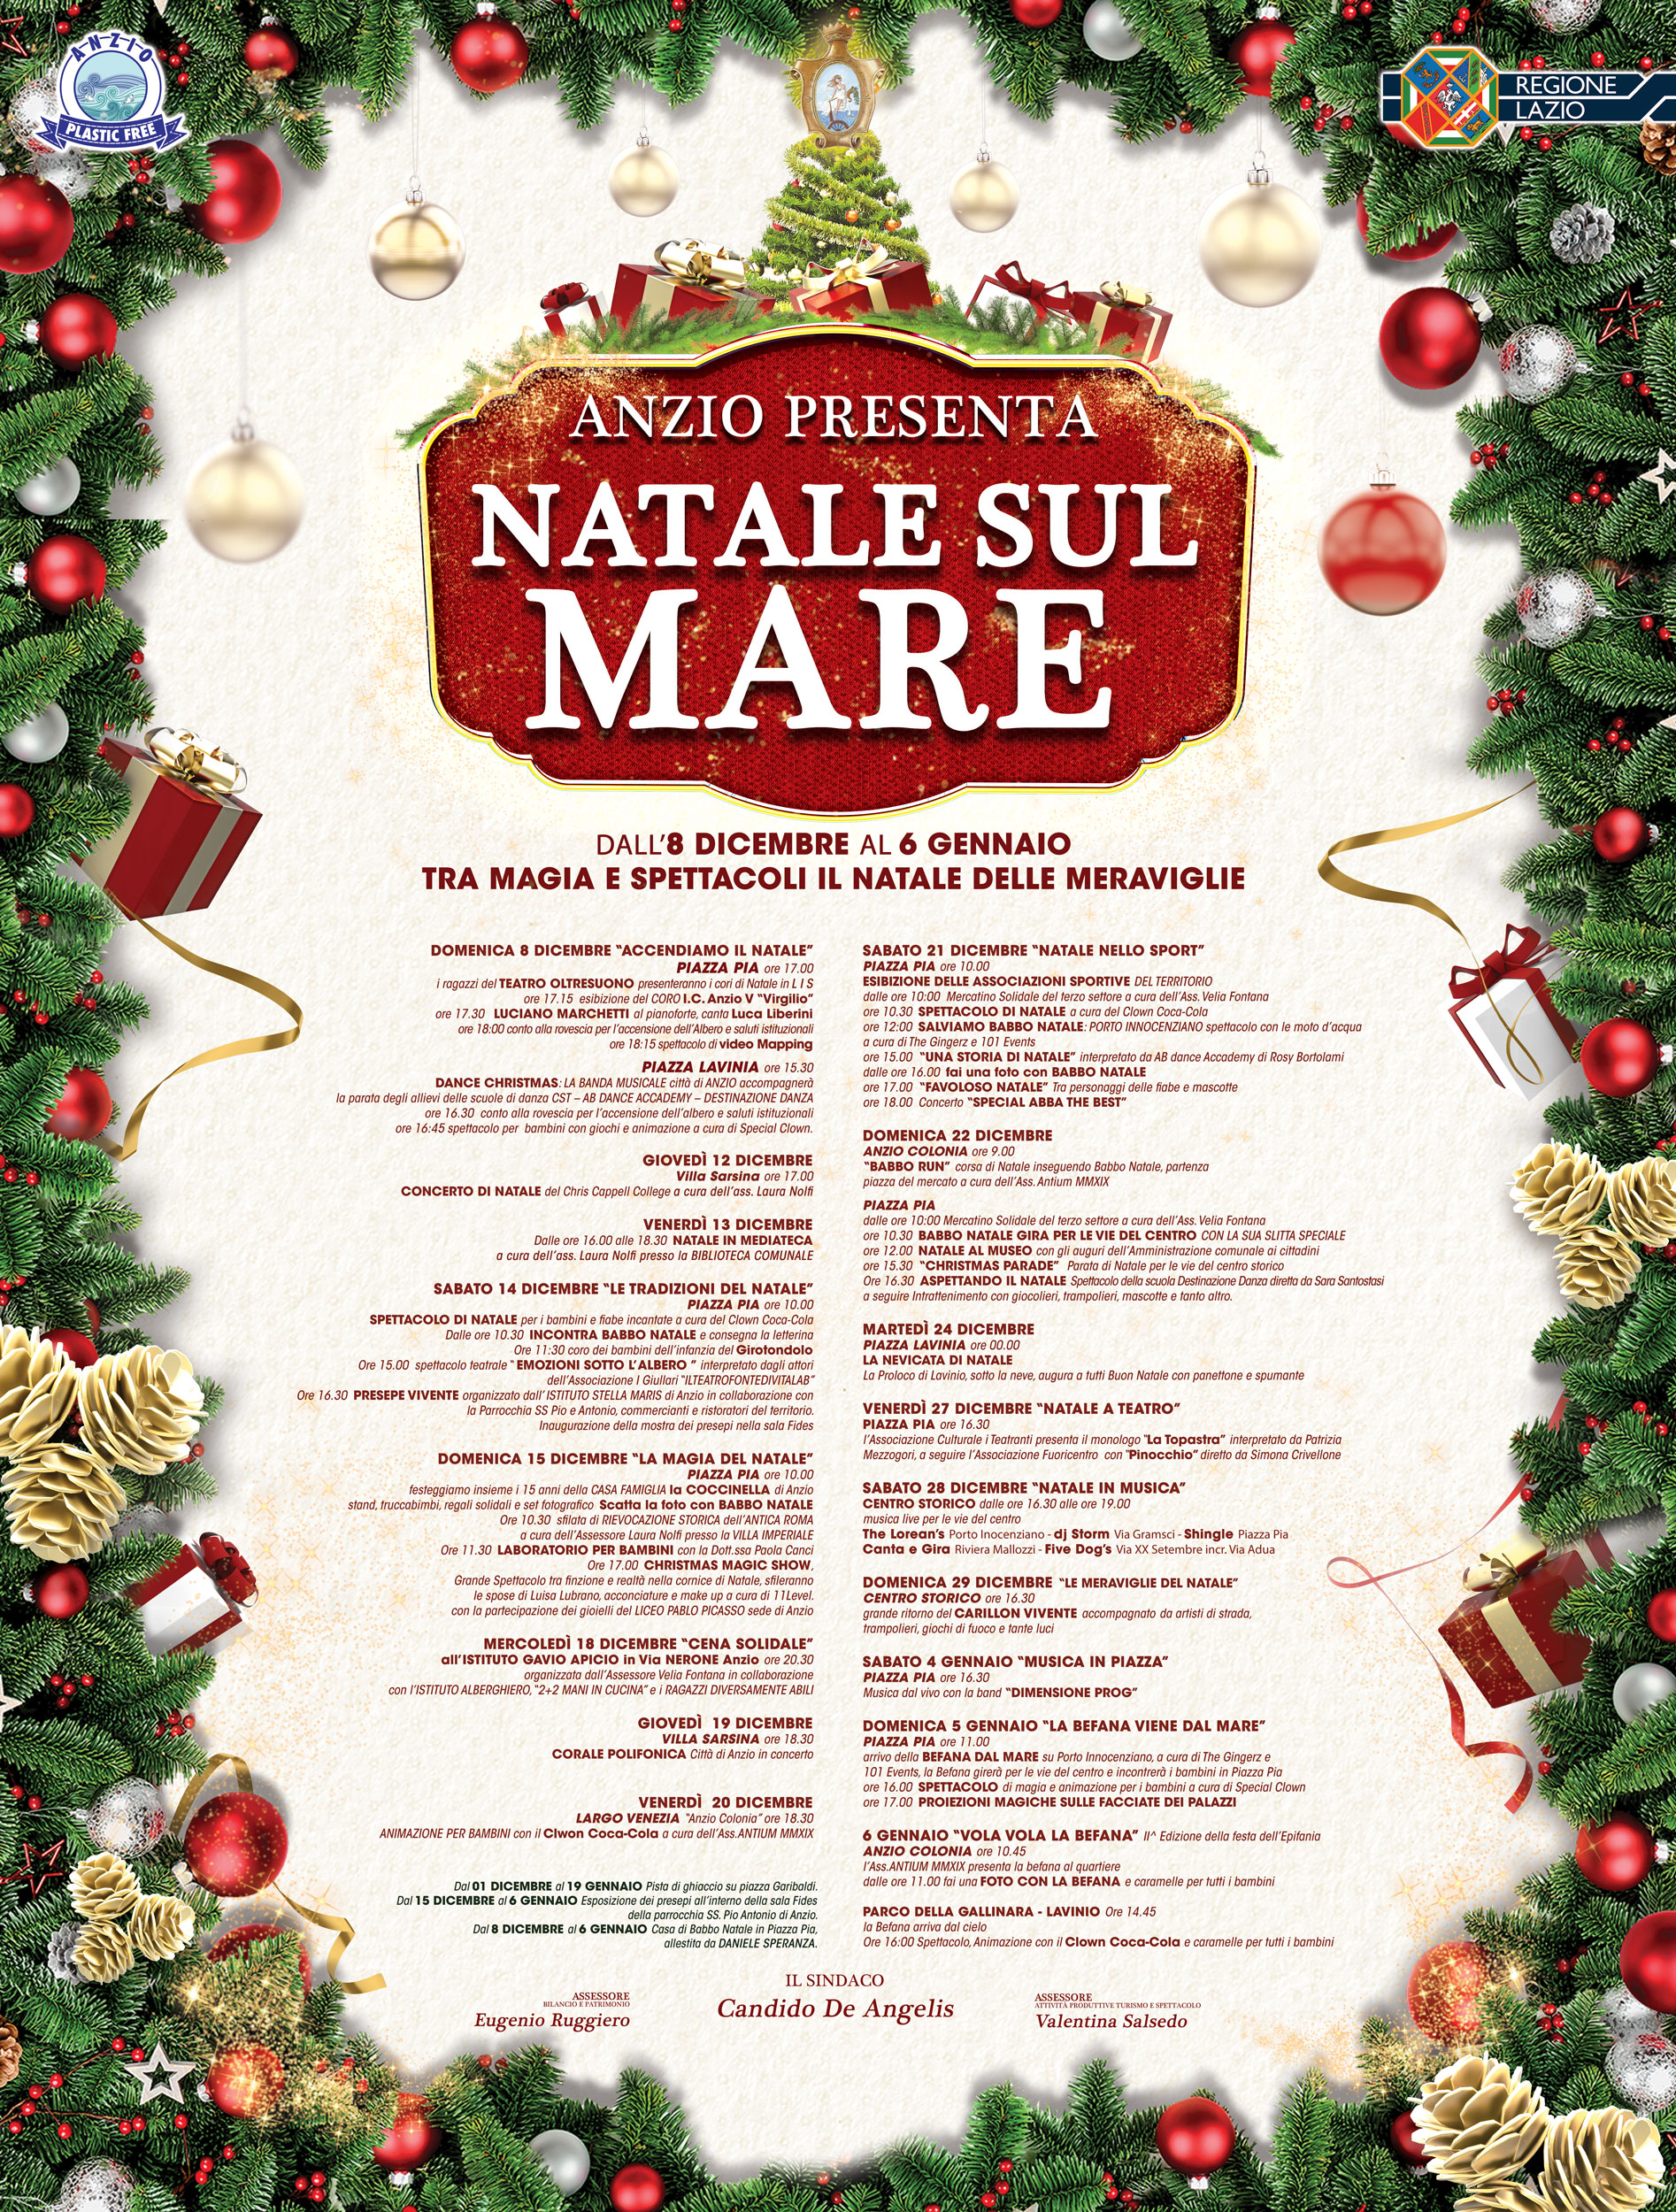 Babbo Natale 8 Dicembre Roma.Anzio Tutti Gli Eventi Di Natale Sul Mare L Eco Del Litorale Notizie Online